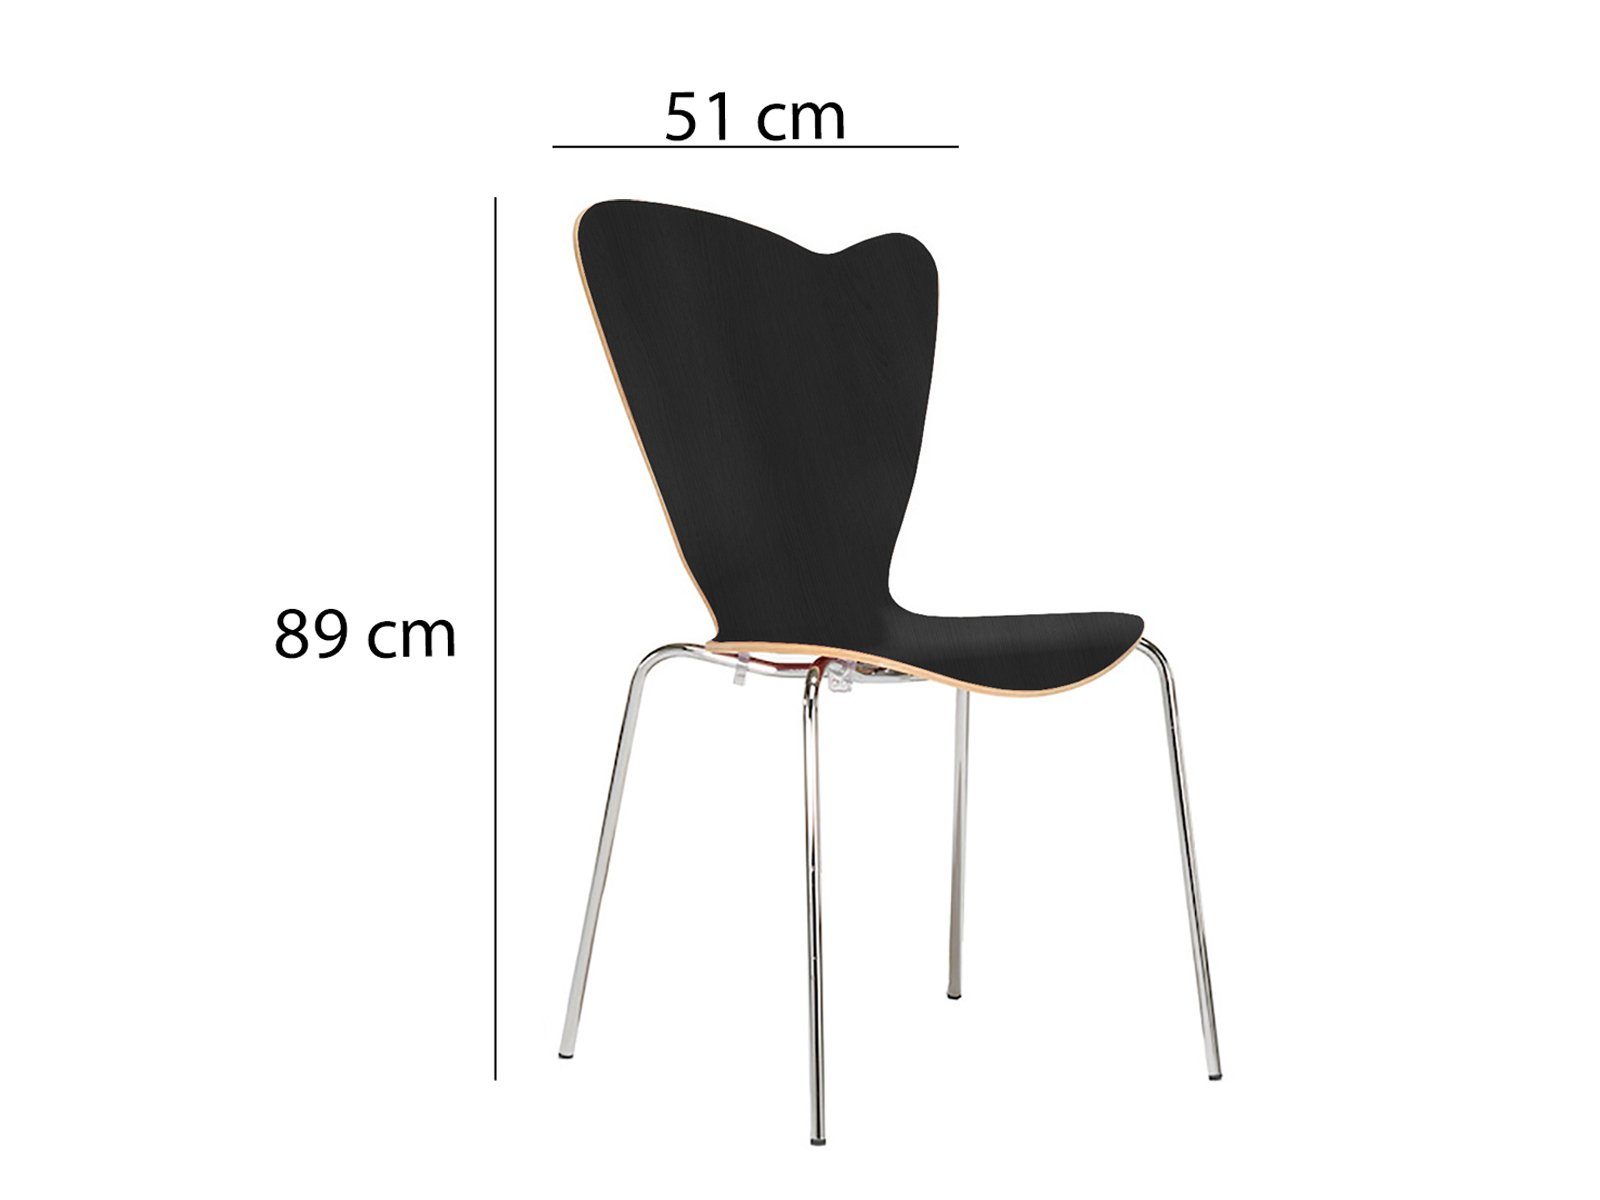 Mauser Sitzkultur ergonomisch-er Bistro-stuhl Stapelstuhl, Schalenstuhl Braun Walnuss Wartezimmerstuhl Gastro